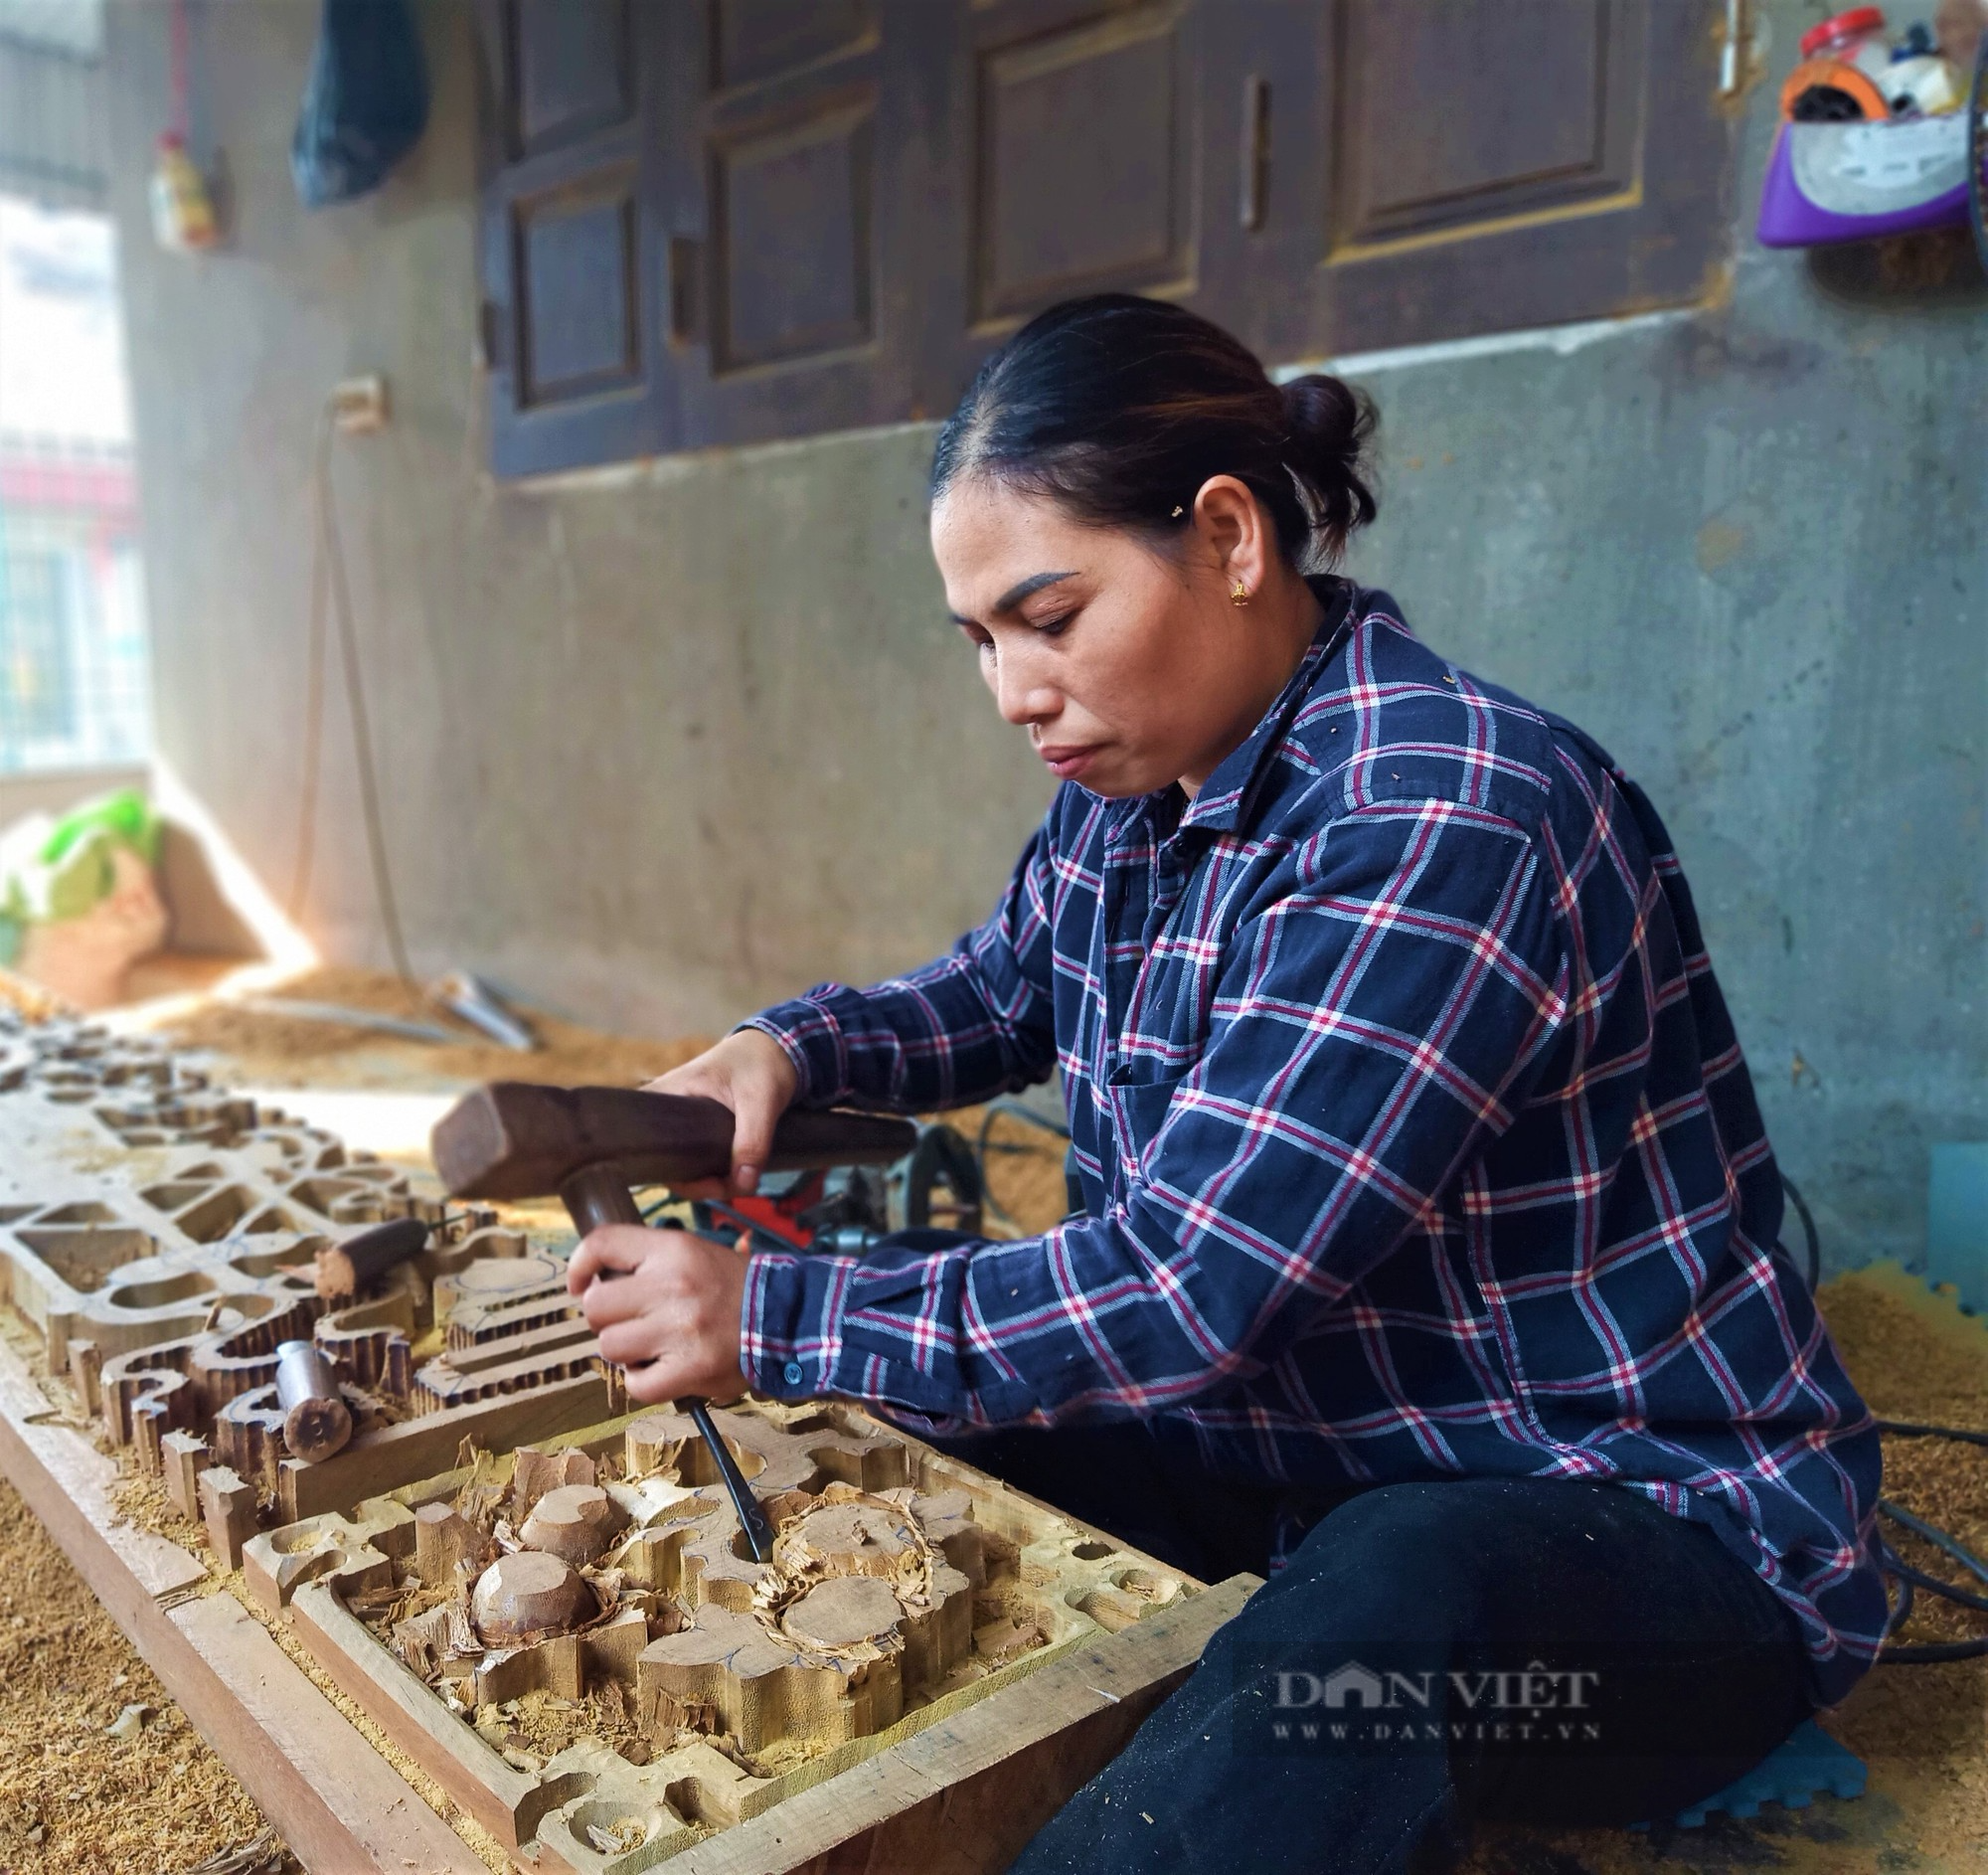 Về làng mộc truyền thống mấy trăm năm tuổi Cúc Bồ ở Hải Dương xem phụ nữ làm nghề của đàn ông - Ảnh 1.